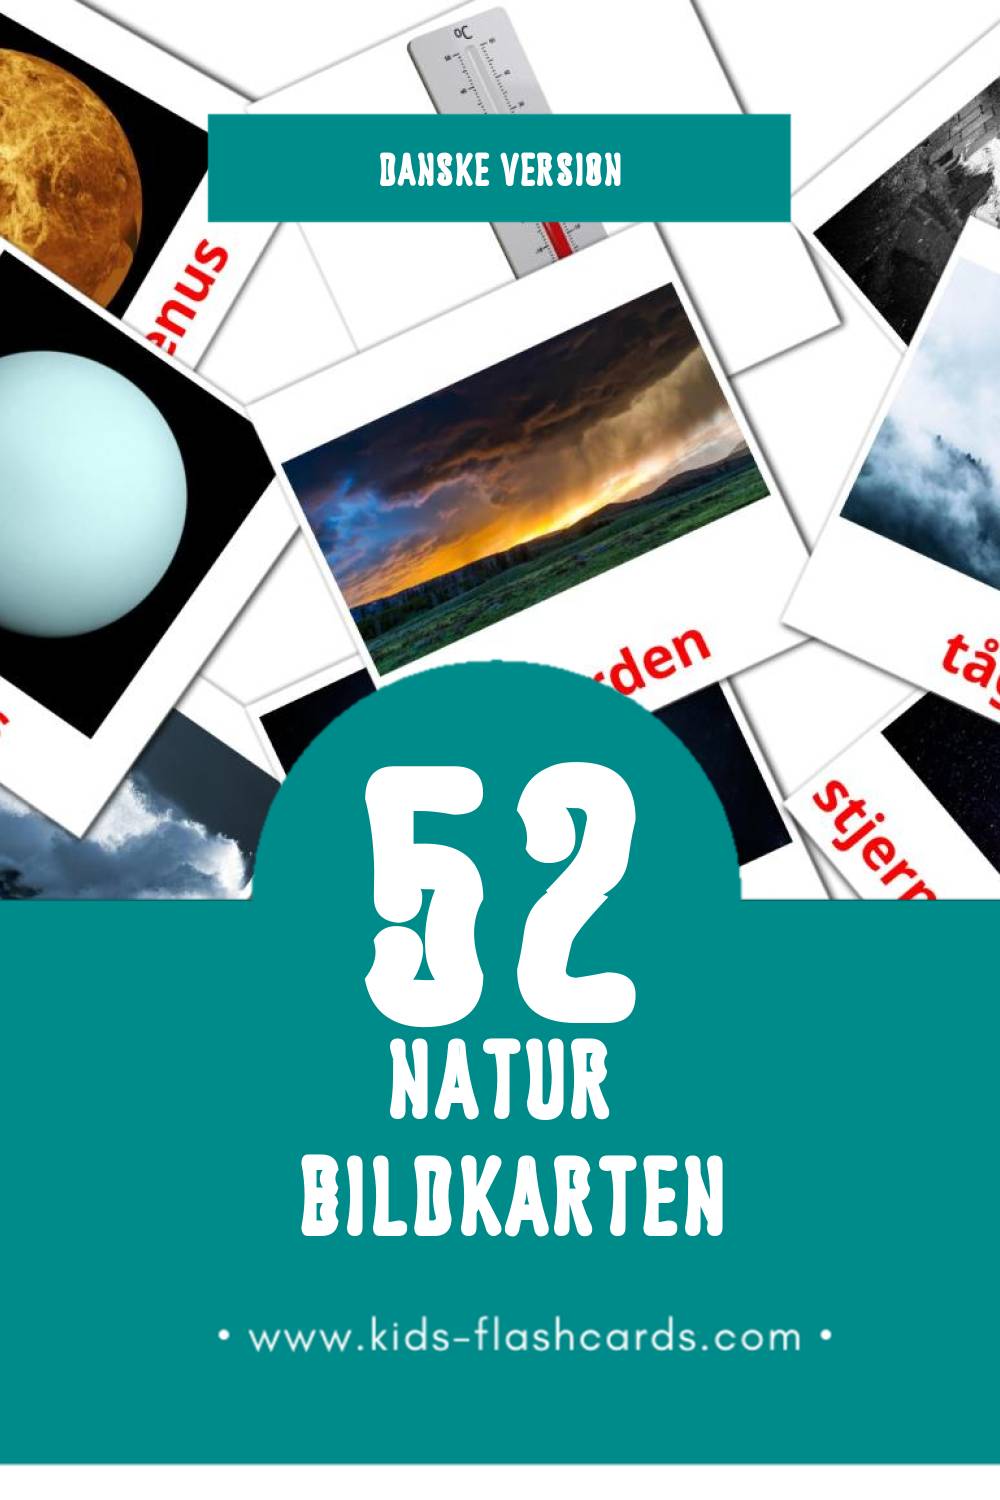 Visual Natur Flashcards für Kleinkinder (52 Karten in Dansk)